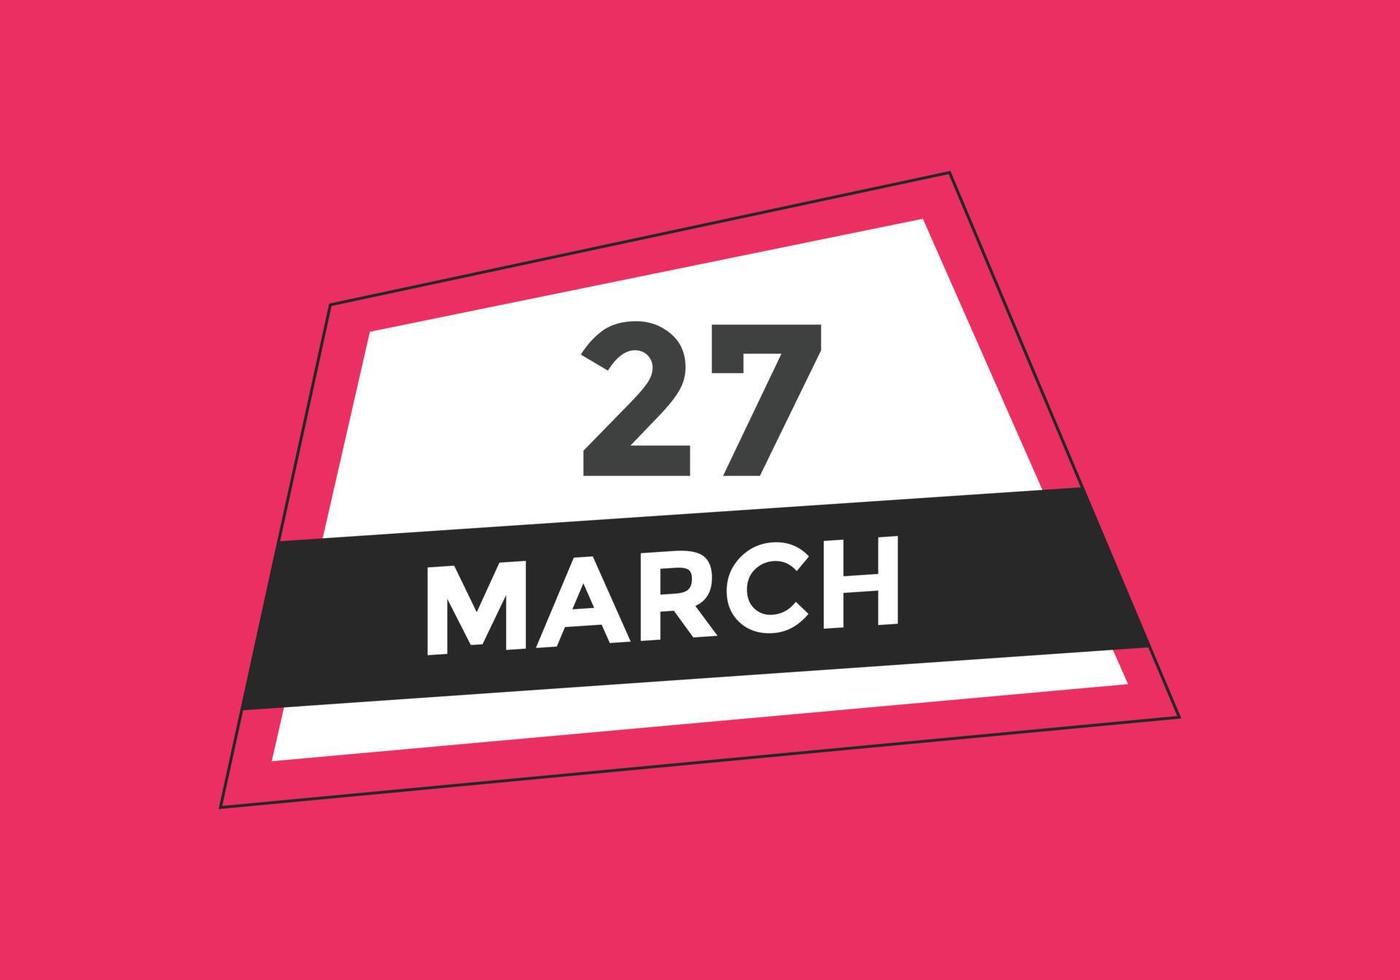 rappel du calendrier du 27 mars. Modèle d'icône de calendrier quotidien du 27 mars. modèle de conception d'icône calendrier 27 mars. illustration vectorielle vecteur